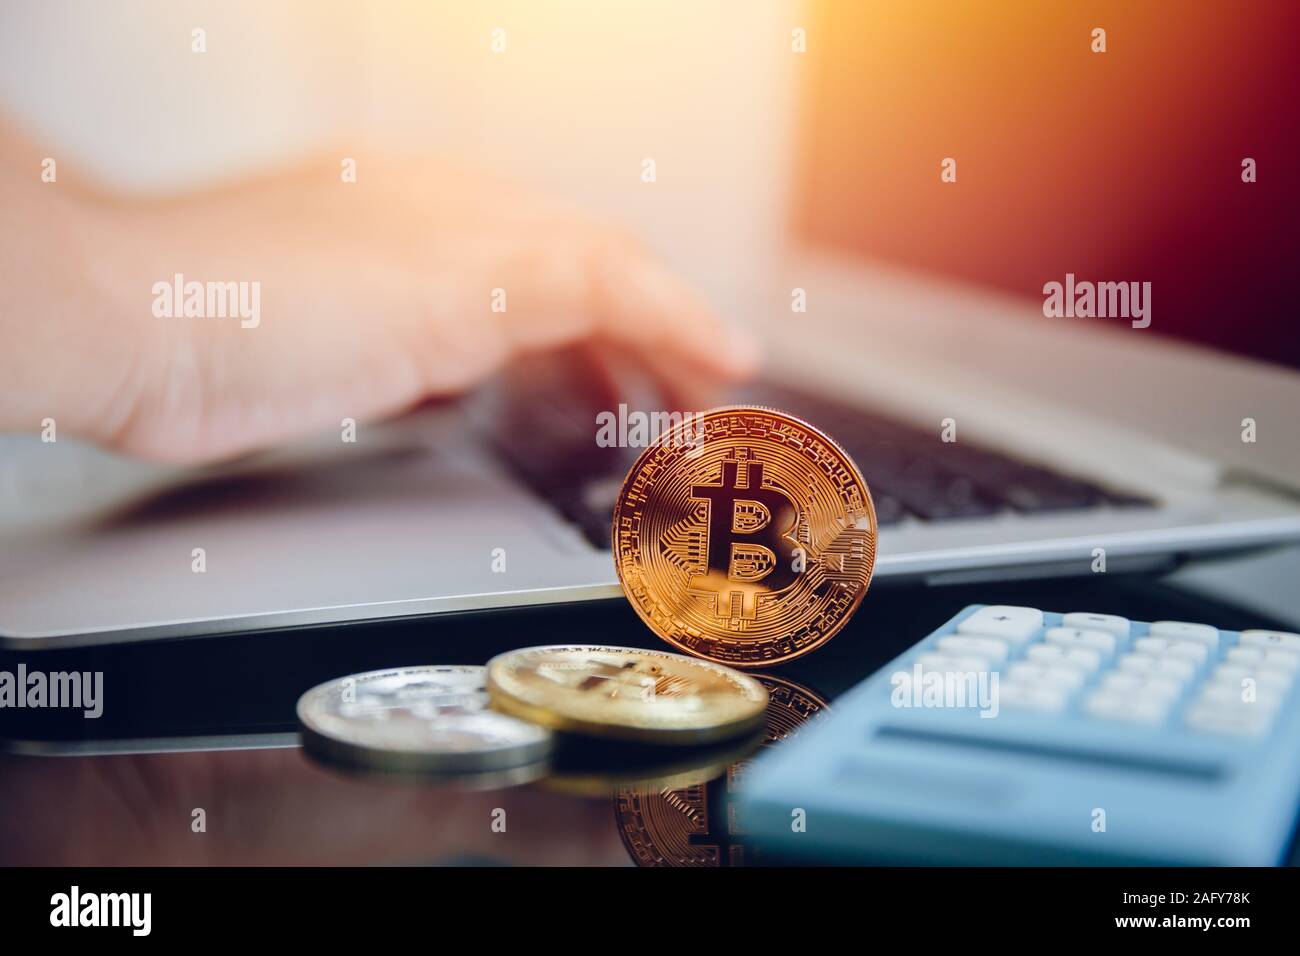 Bitcoin con ordenador portátil digital de dinero o cryptocurrency pago con moneda virtual nuevo concepto. Foto de stock